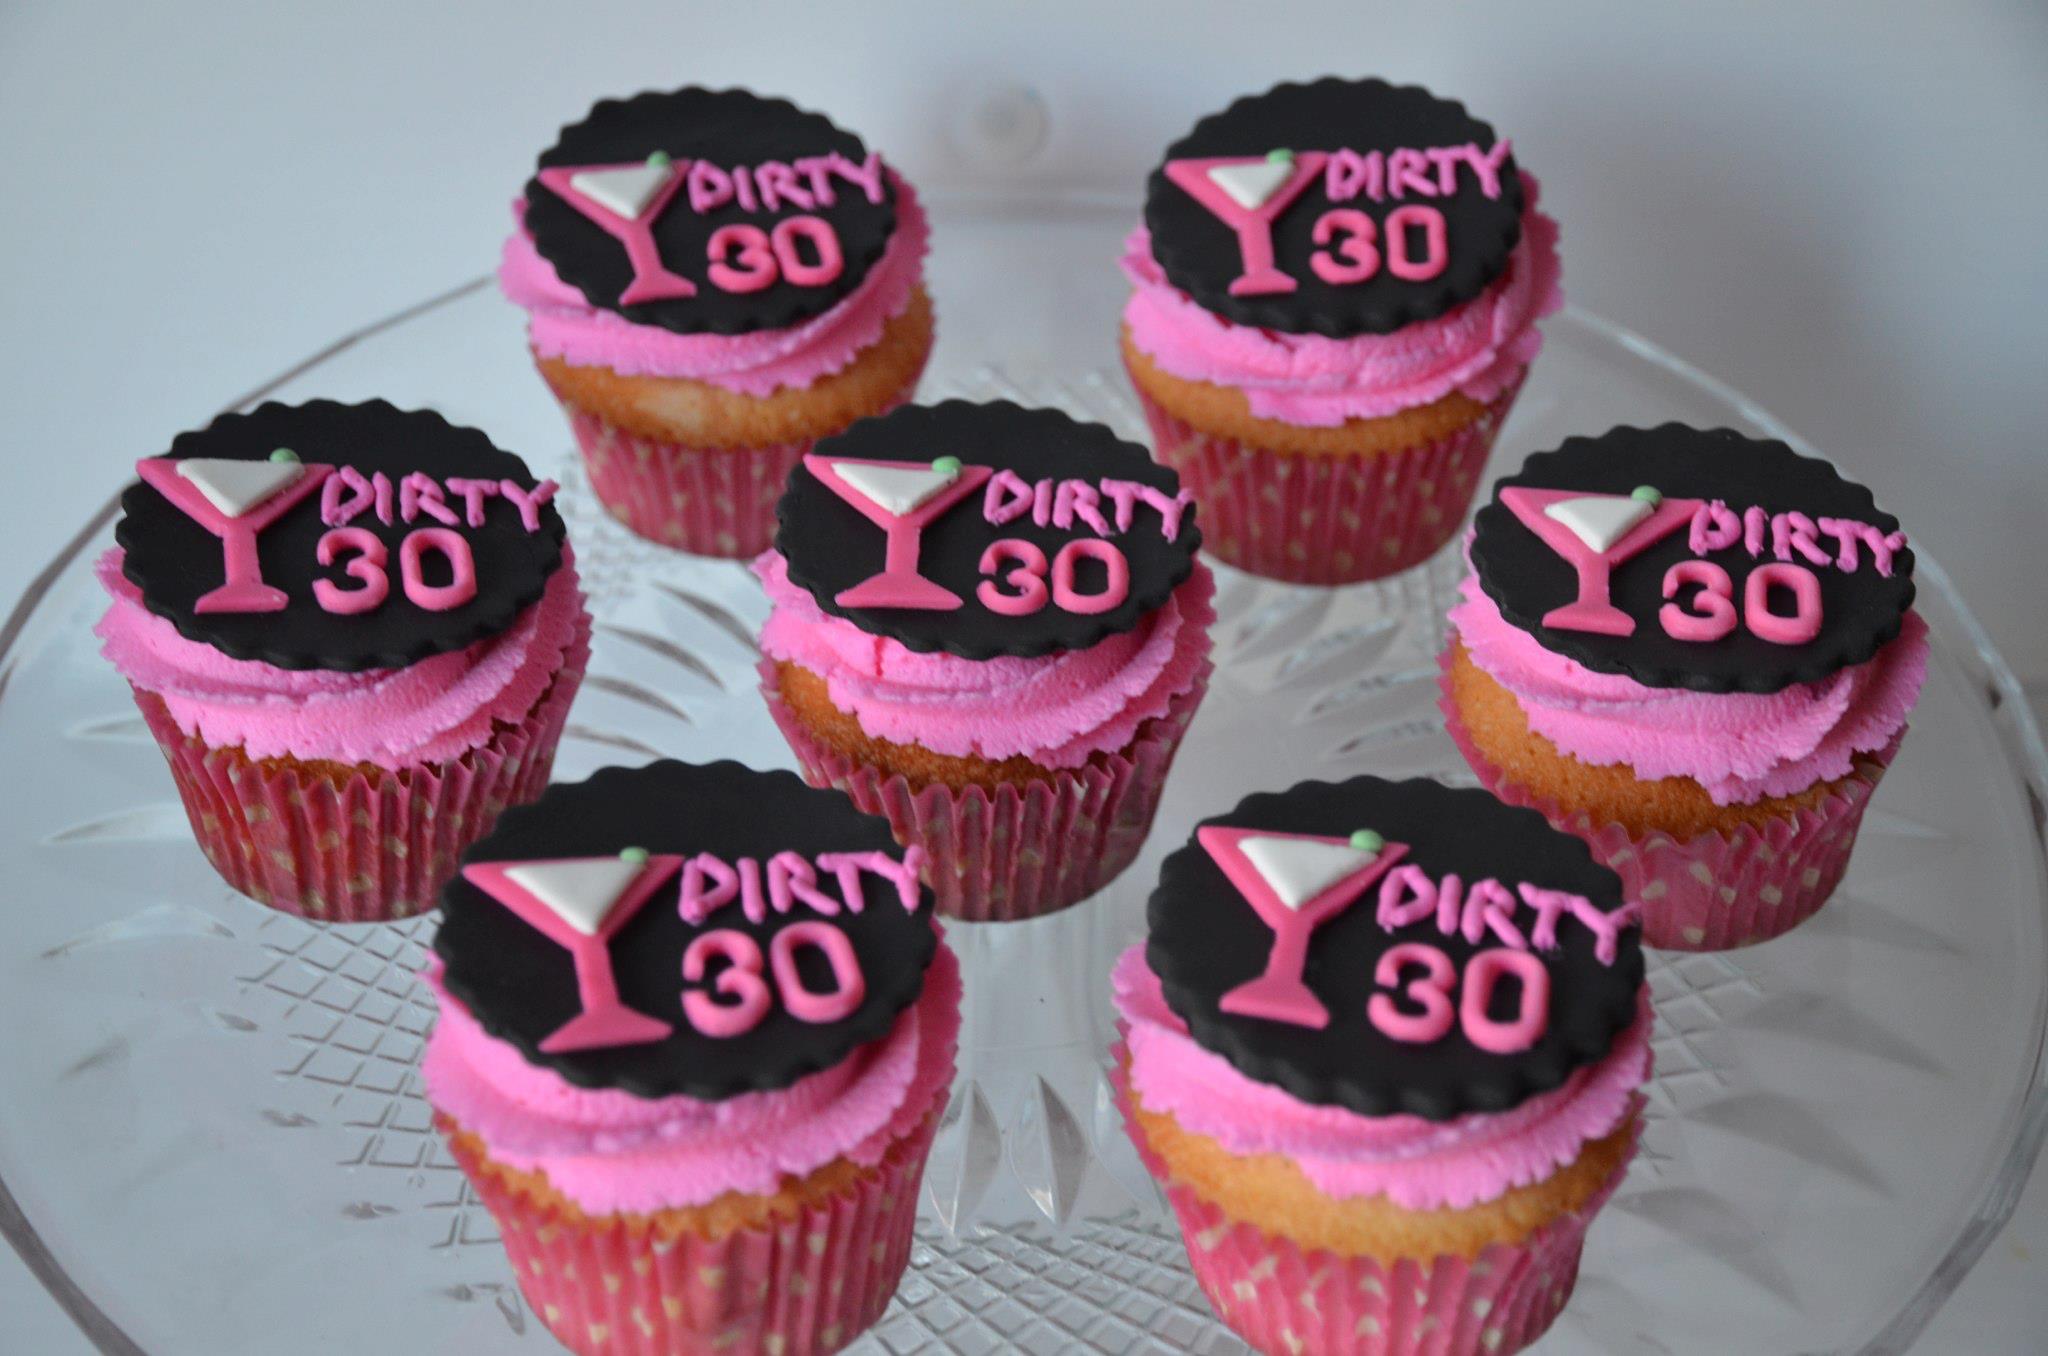 11 Photos of Dirty 30 Birthday Cupcakes.